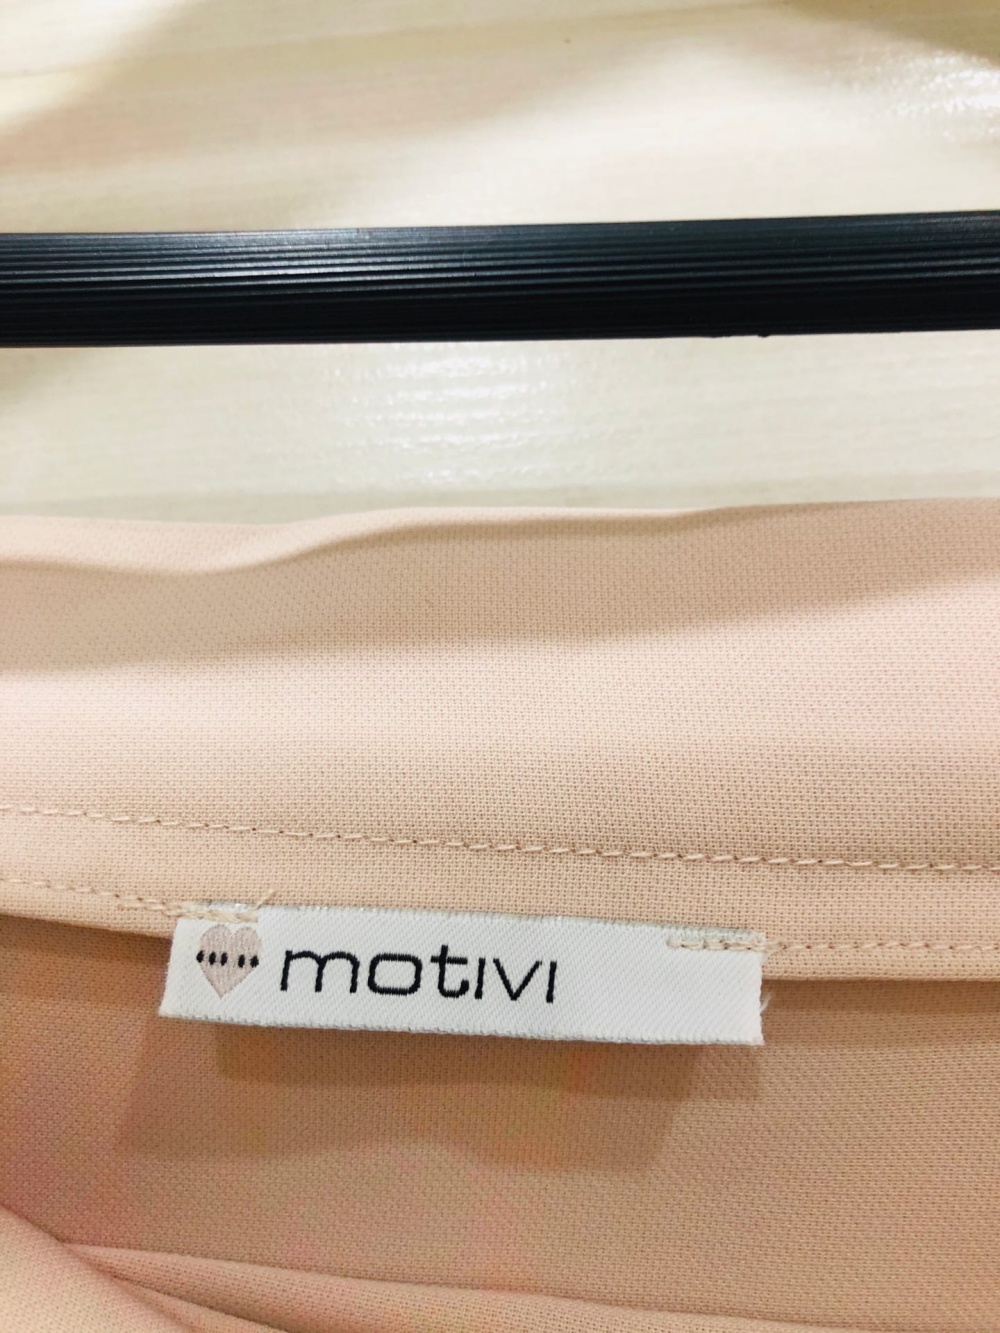 Платье Motivi. Размер M-L.